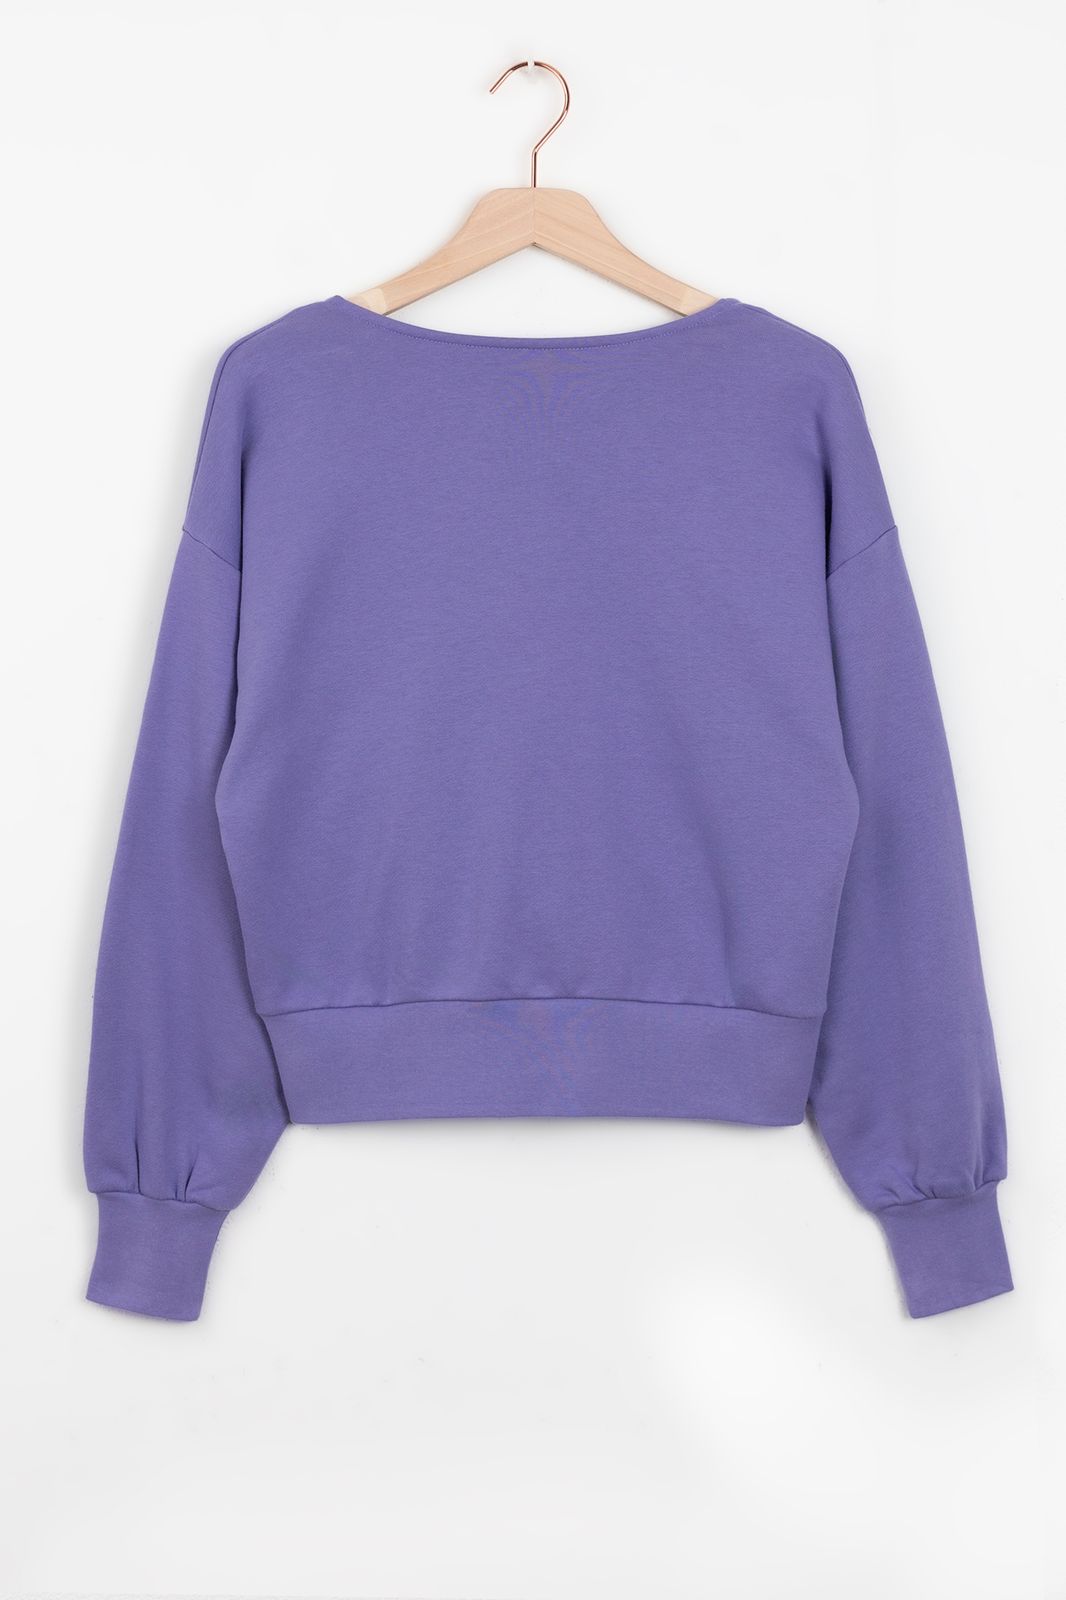 Sweater mit tiefem Ausschnitt - lila